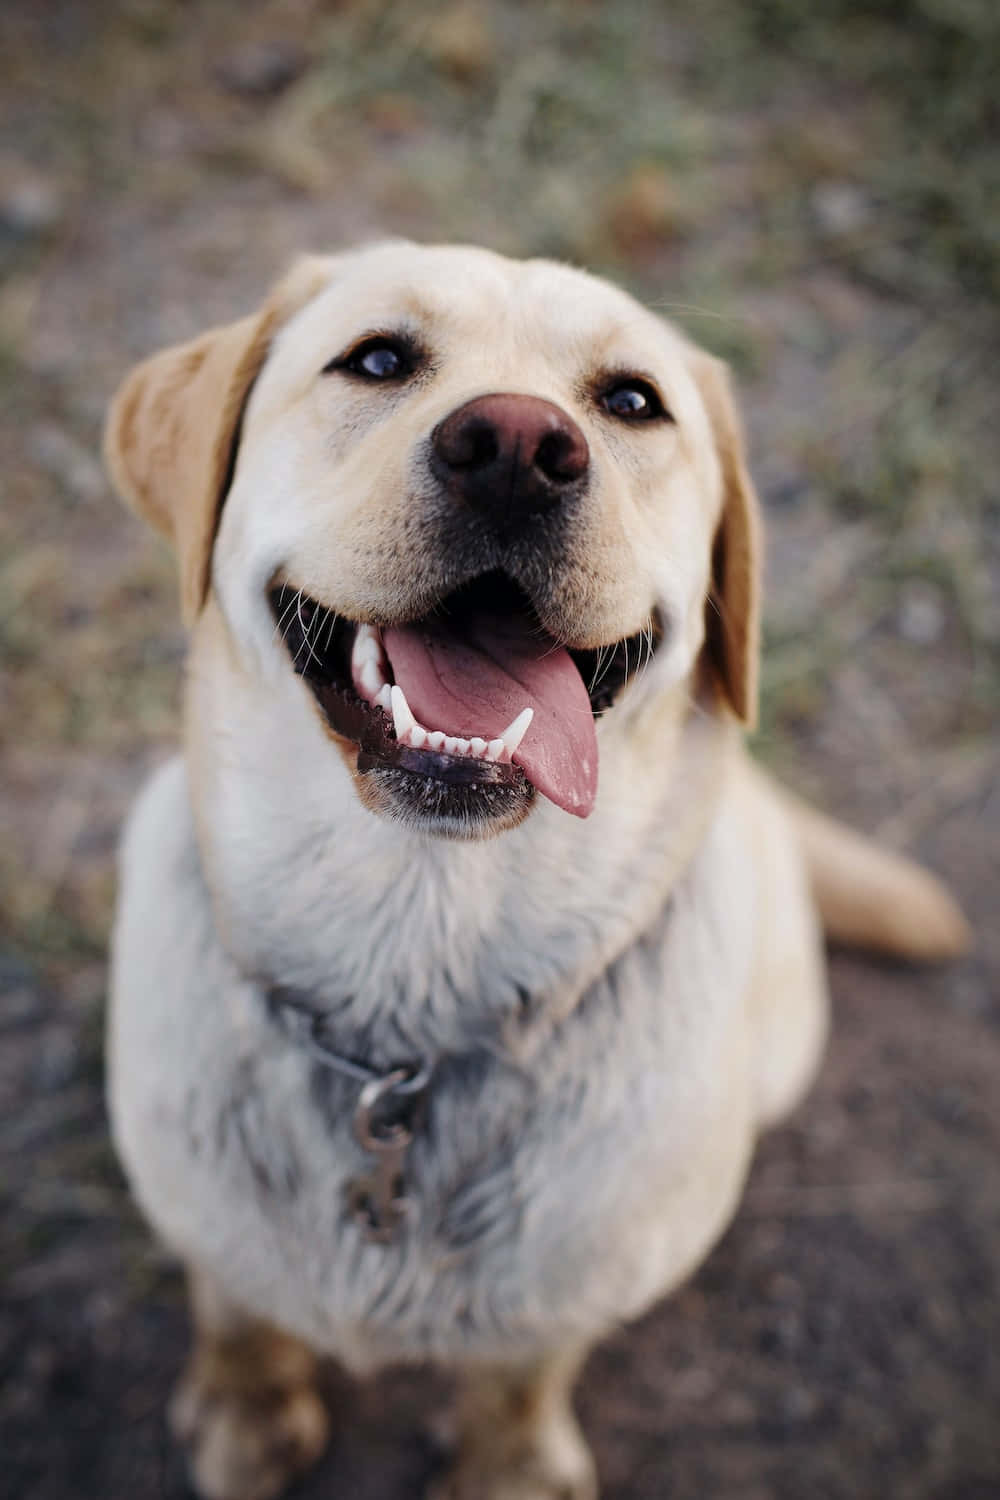 A cute golden labrador pup enjoying a sunny day